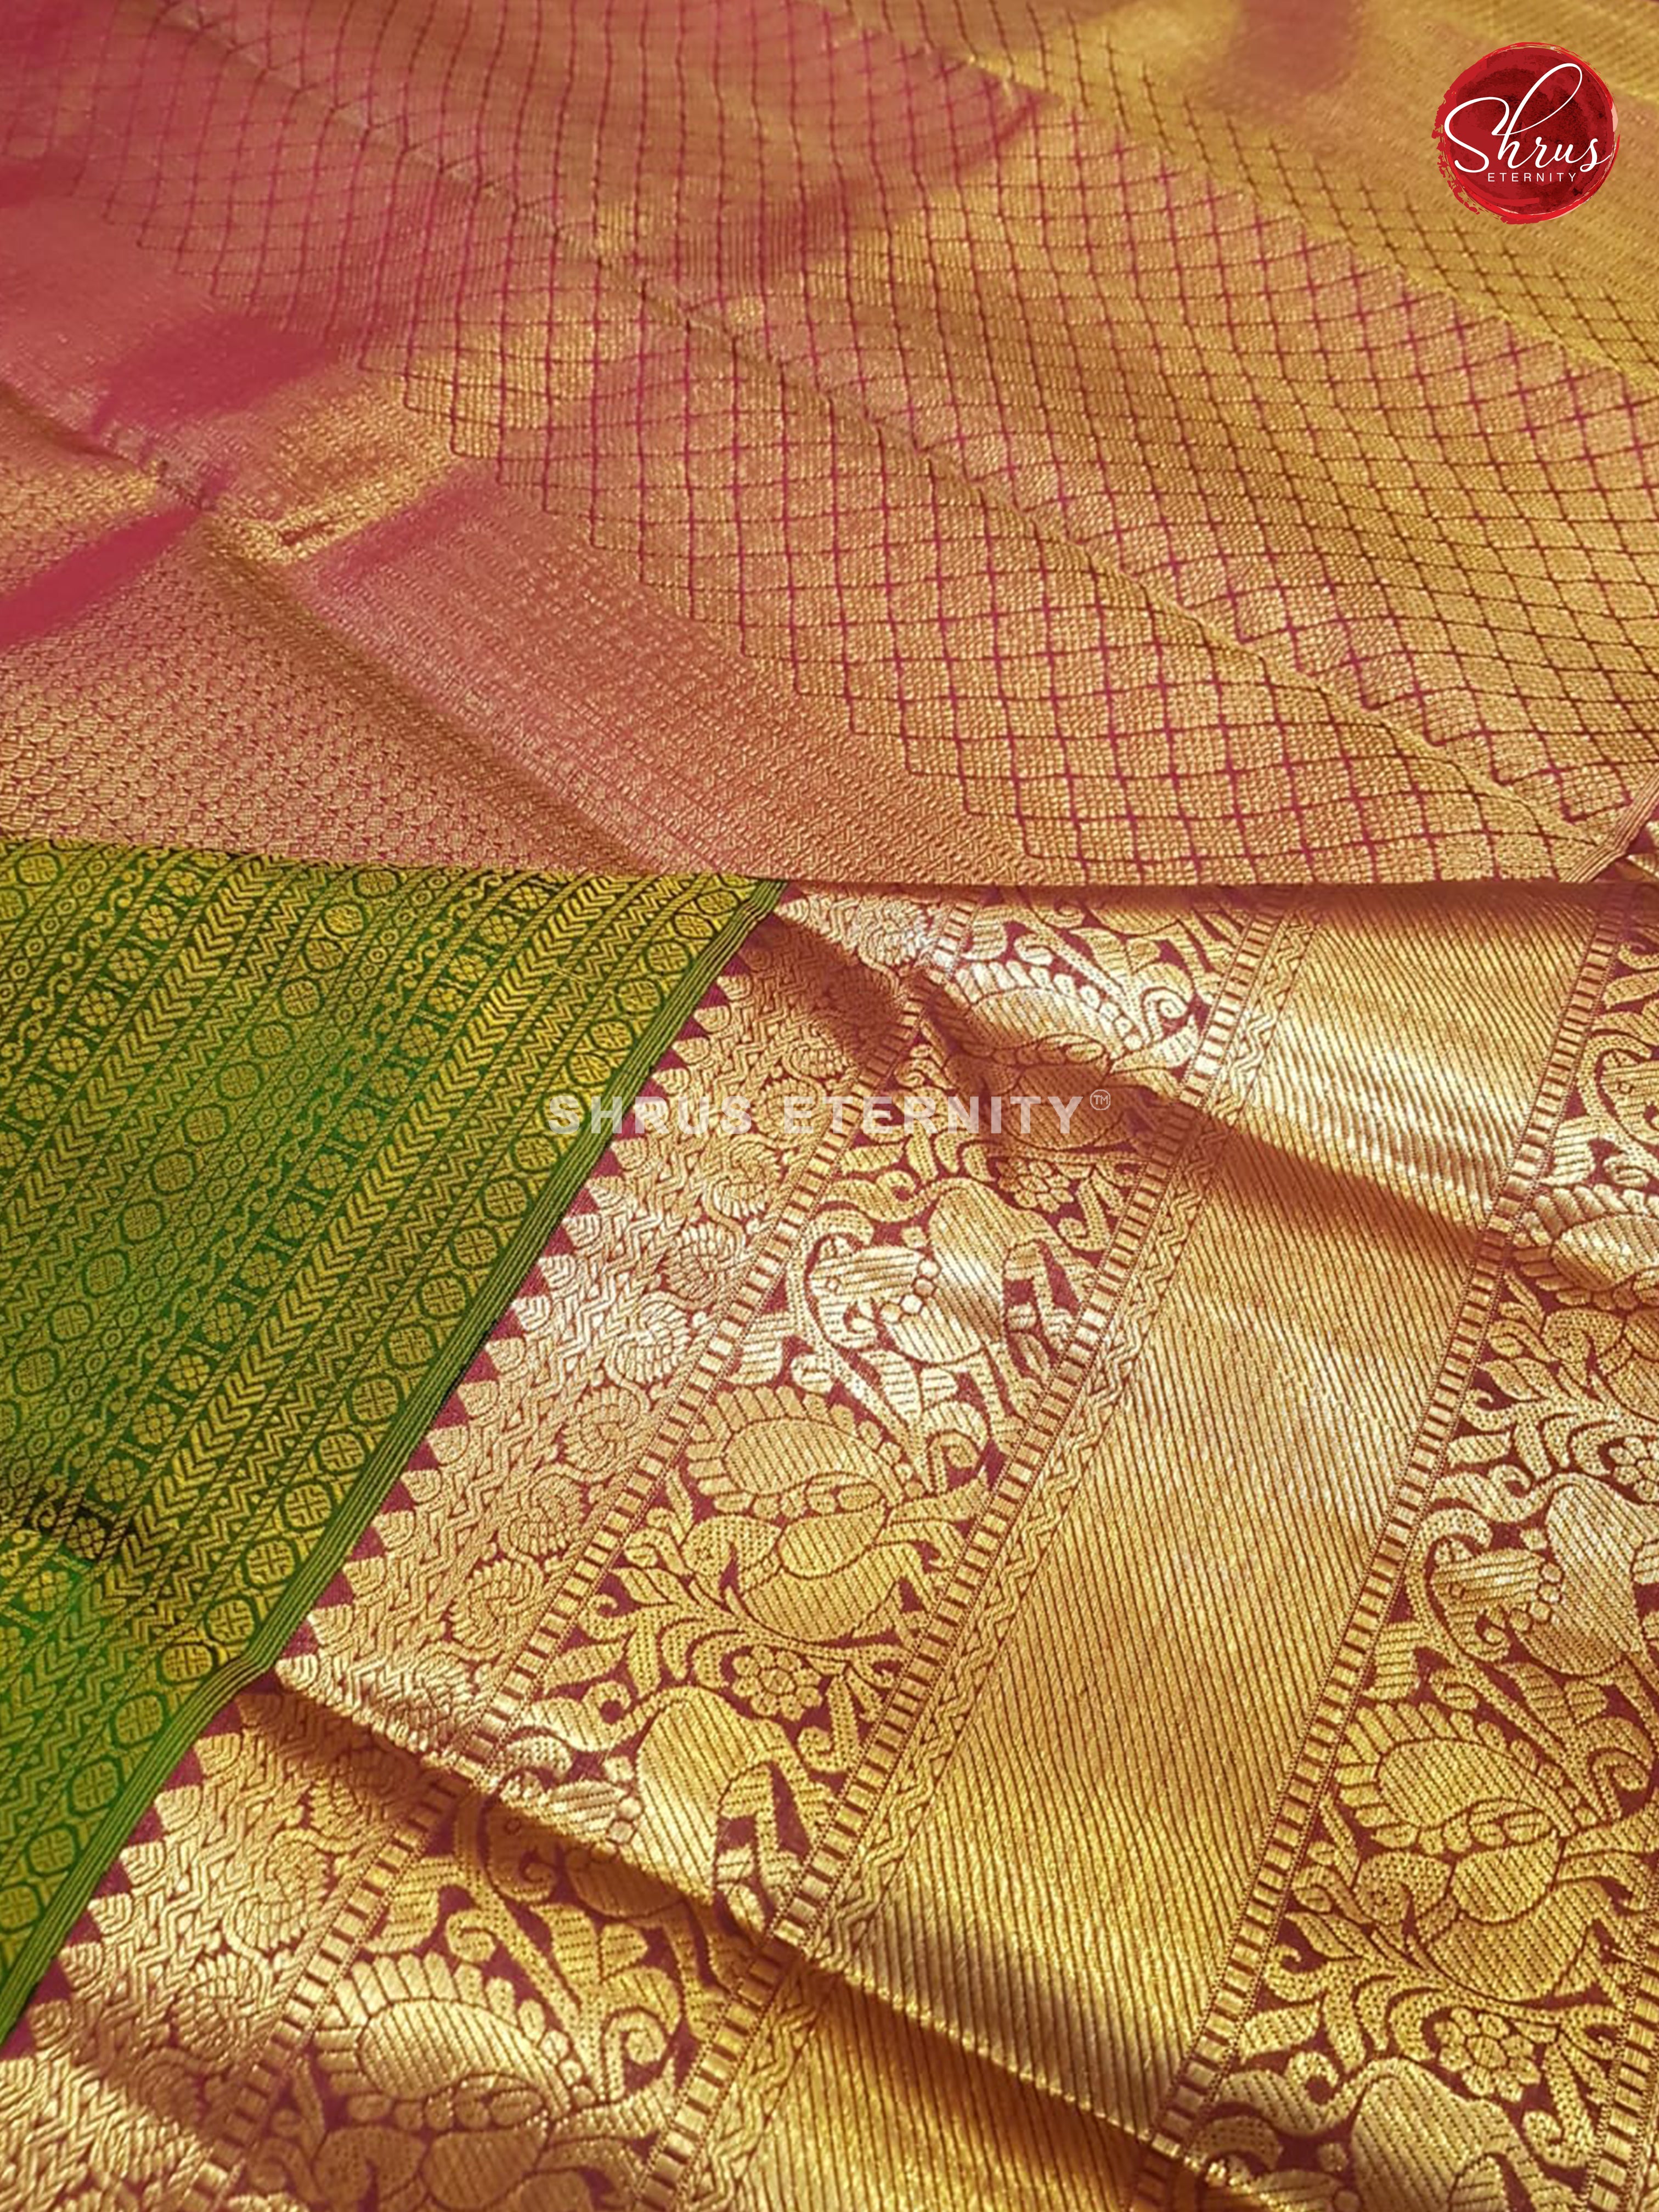 Green & Maroon - Kanchipuram Silk - Shop on ShrusEternity.com